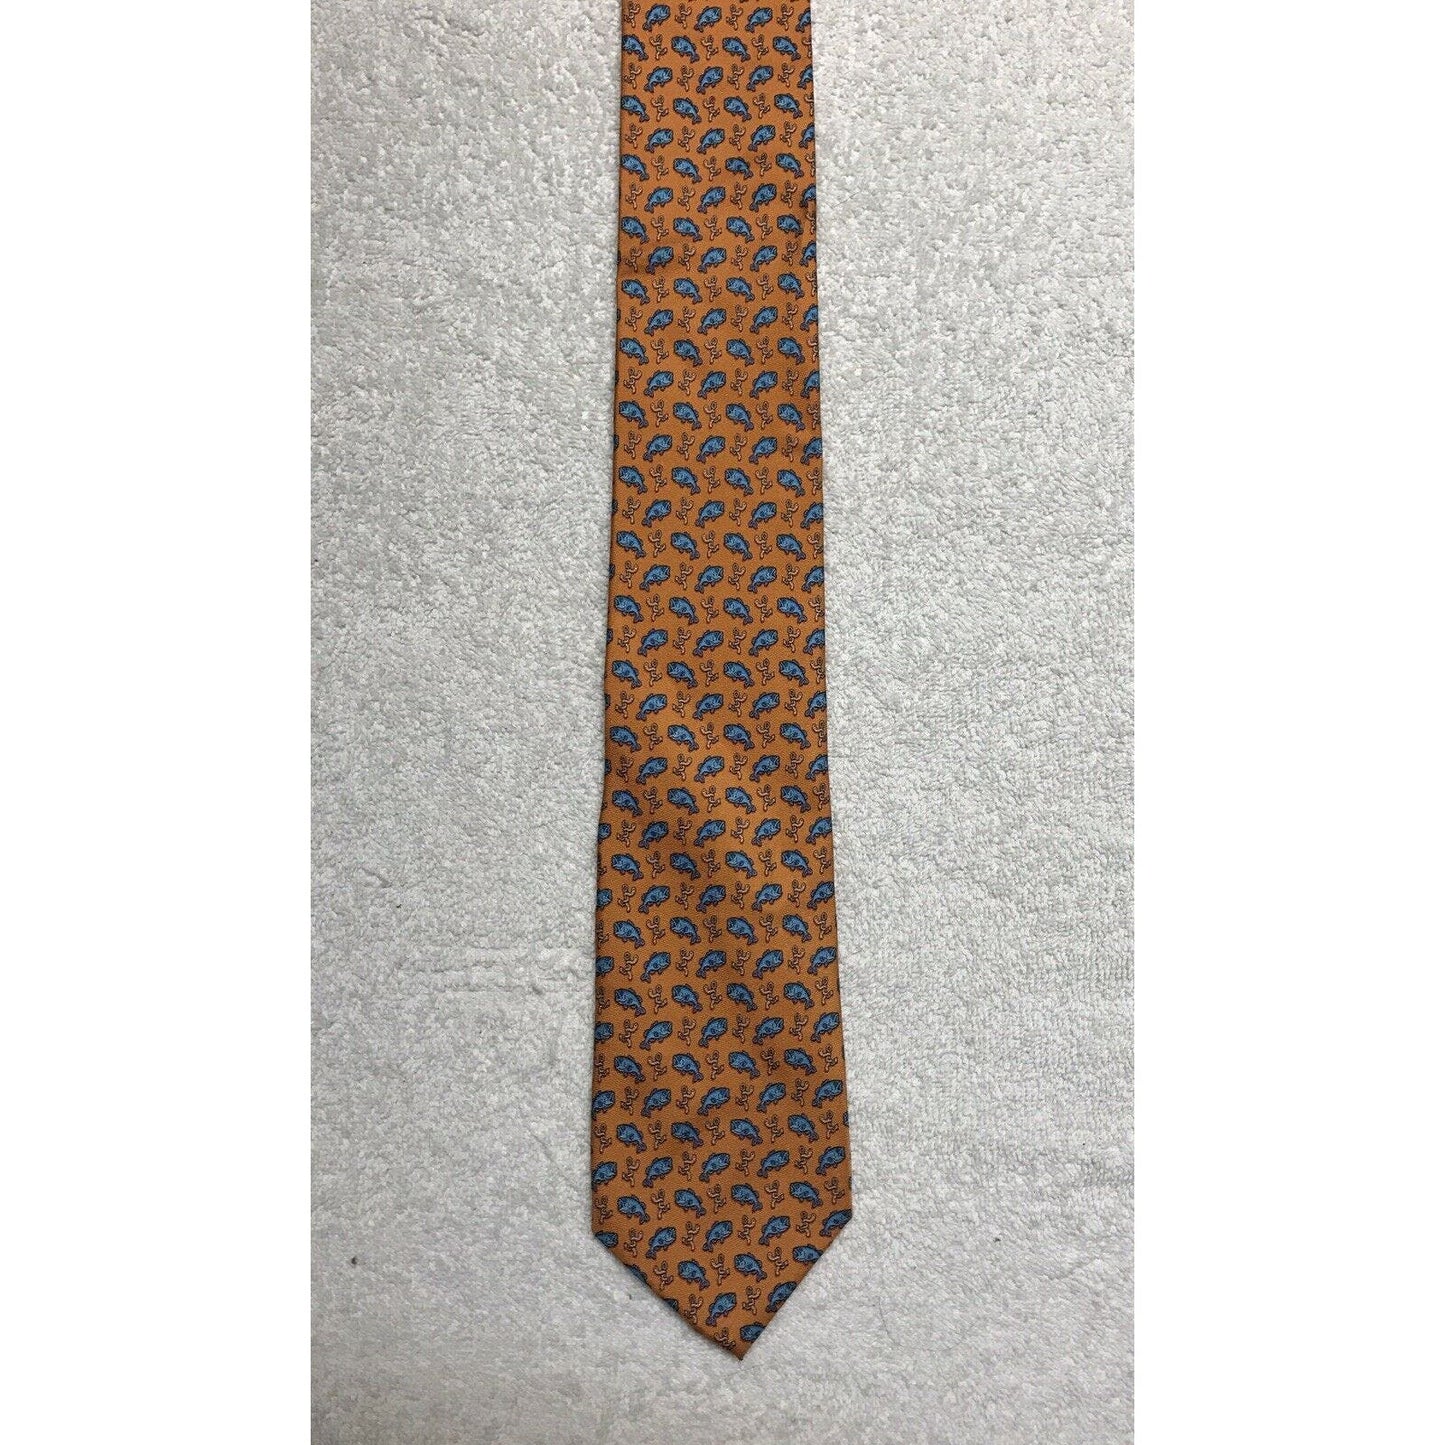 Croft And Barrow Orange Fish Worm Novelty Tie Necktie 100% Silk